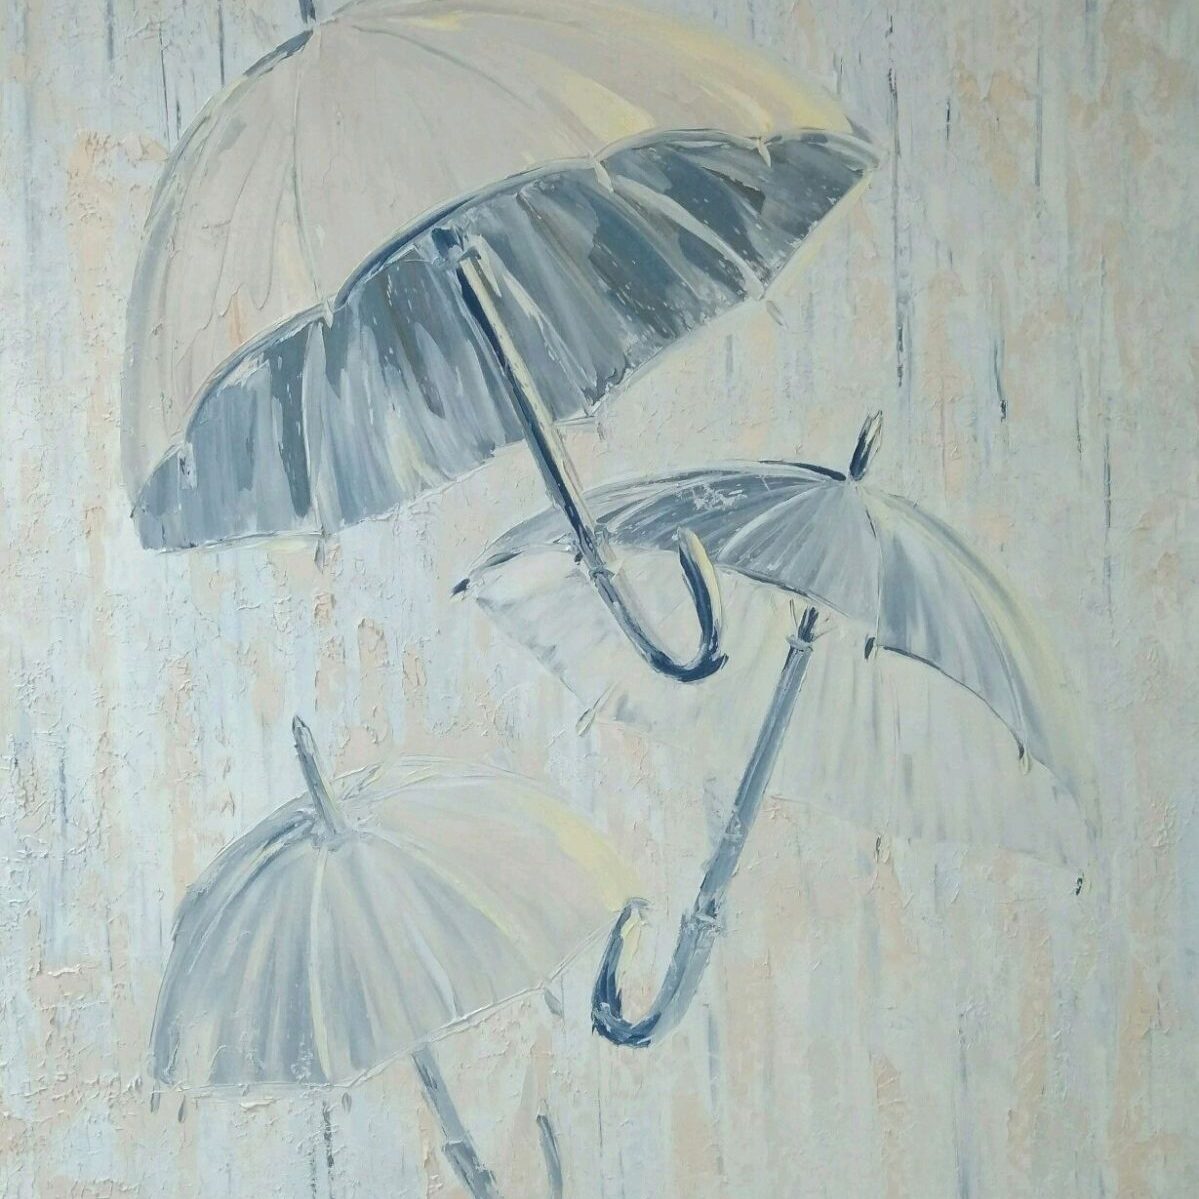 Зонтики